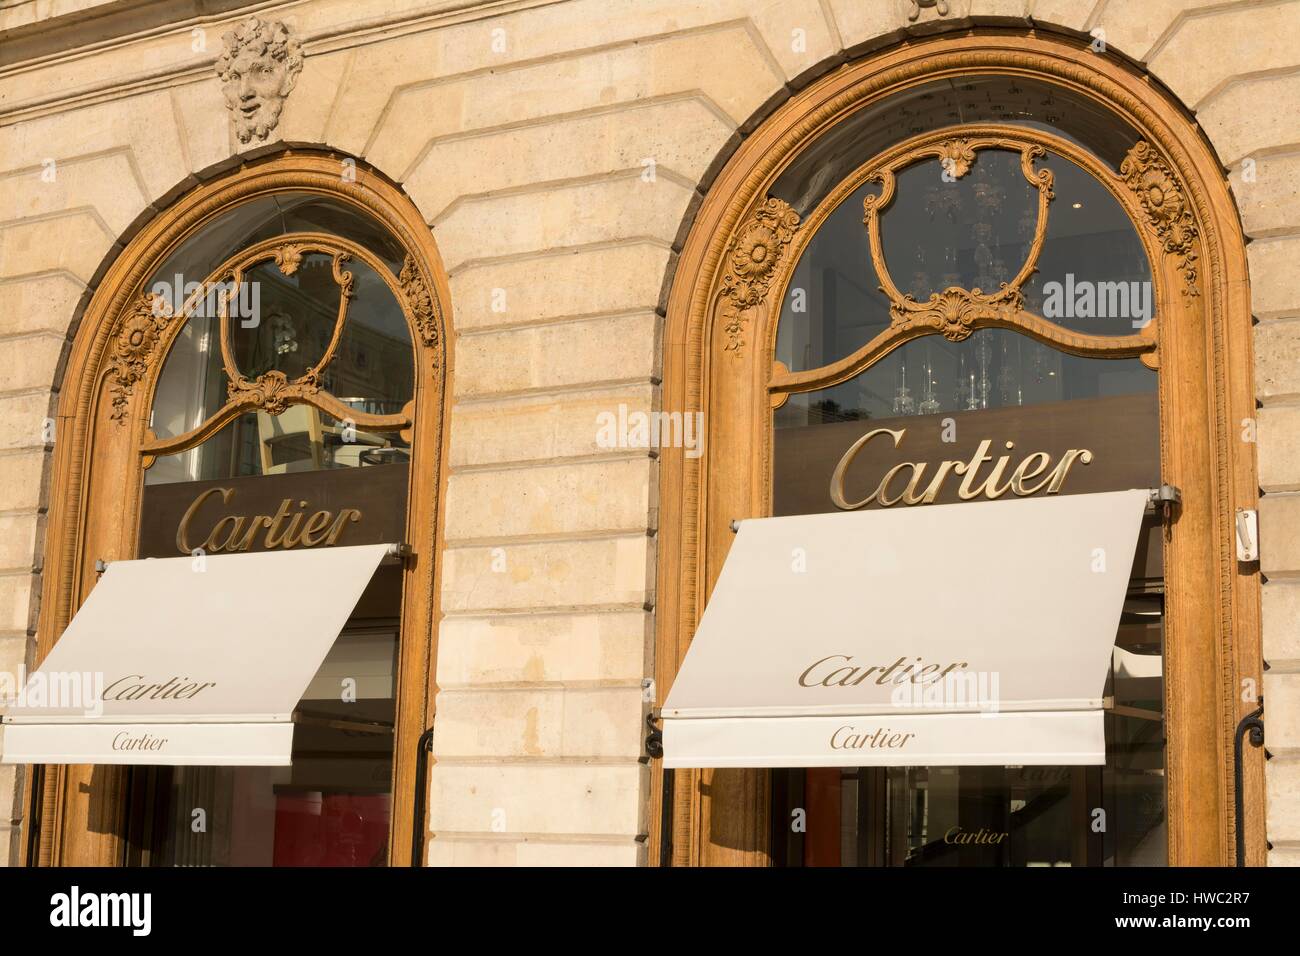 cartier shop france